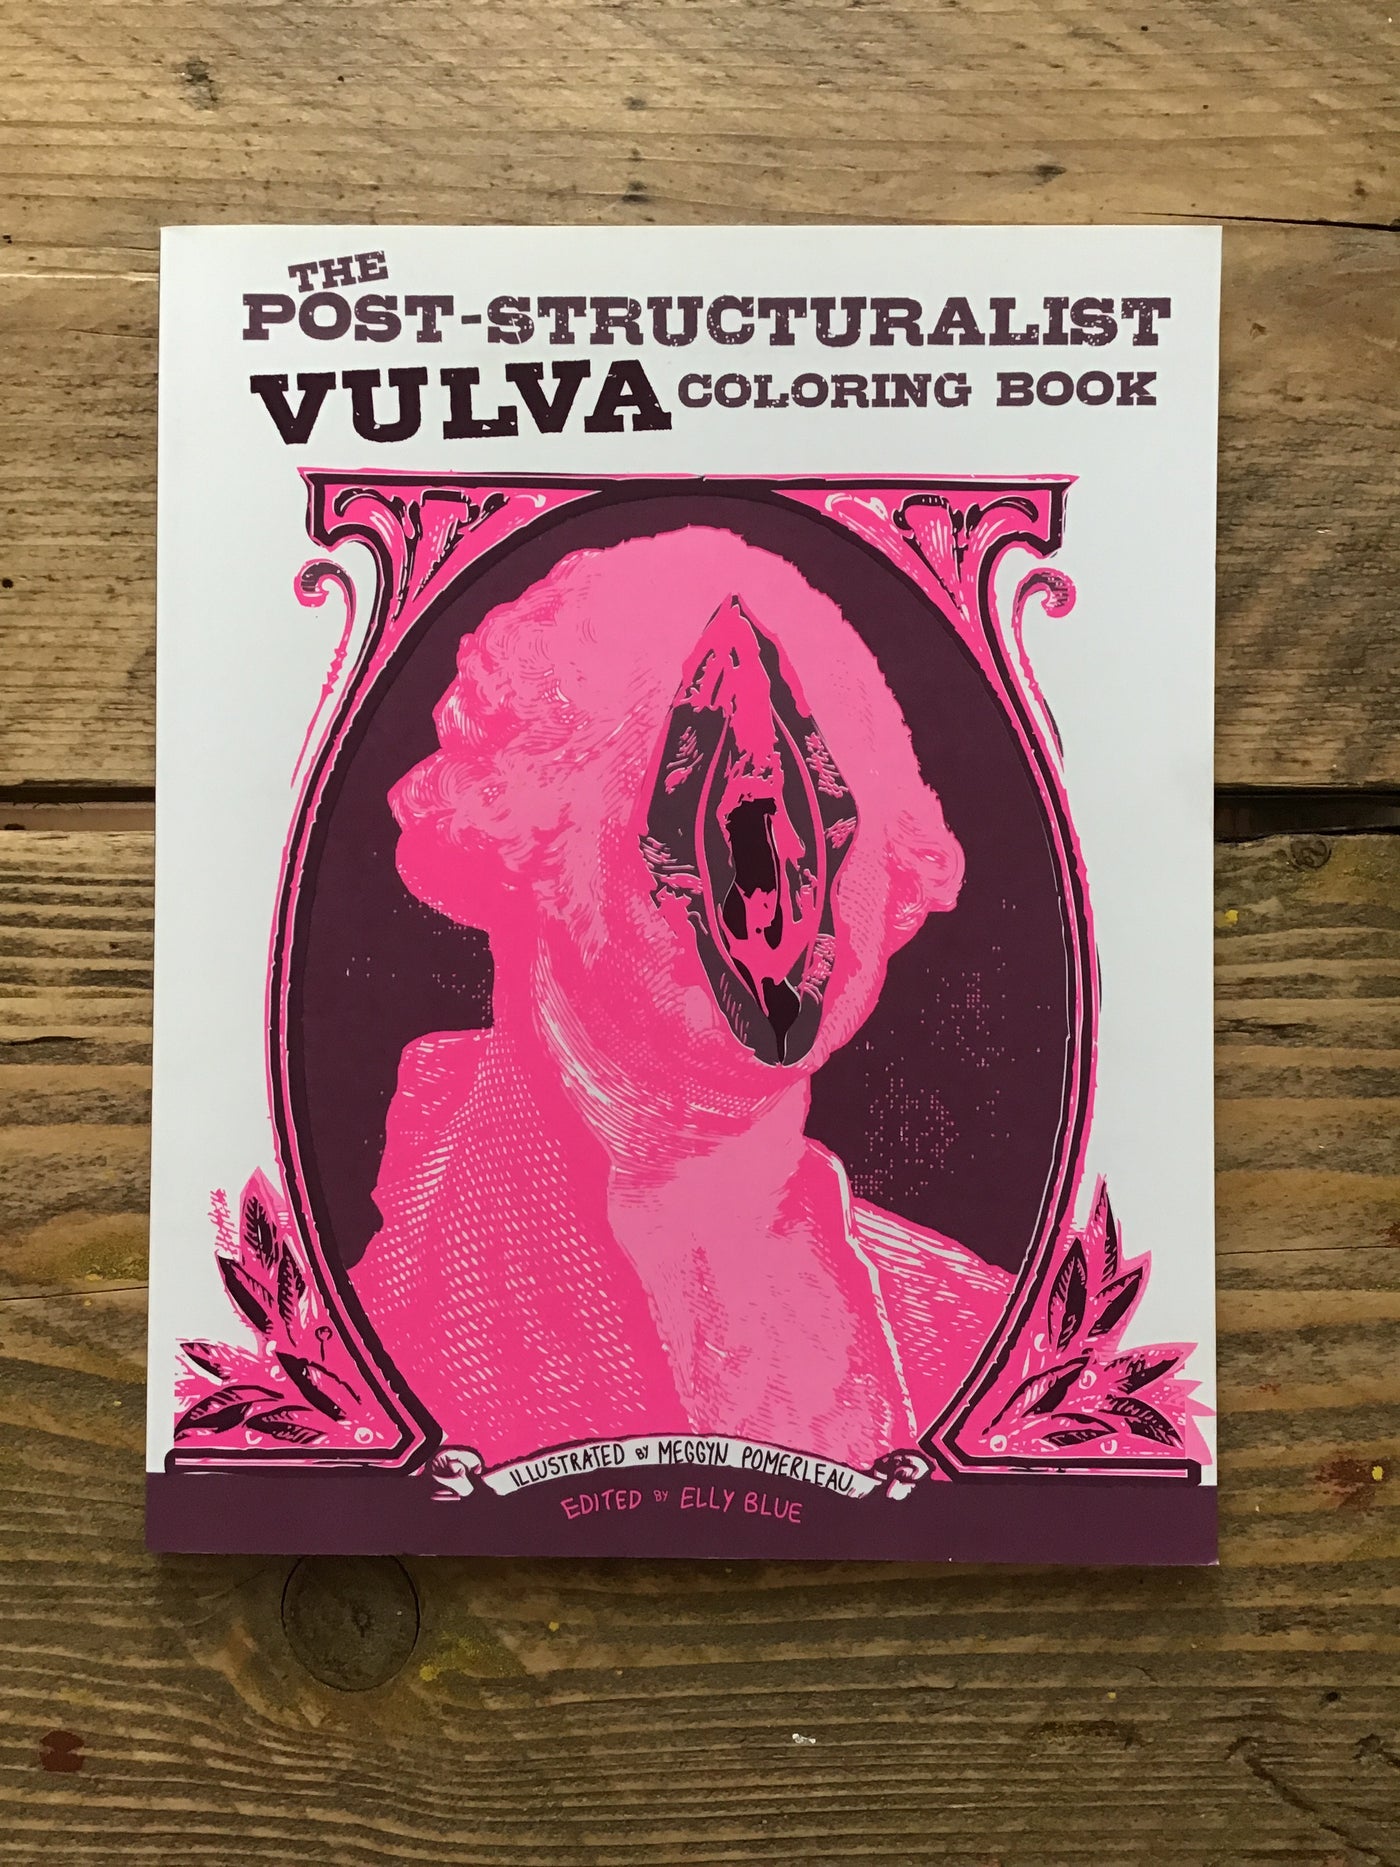 Post-structuralist Vulva Coloring Book